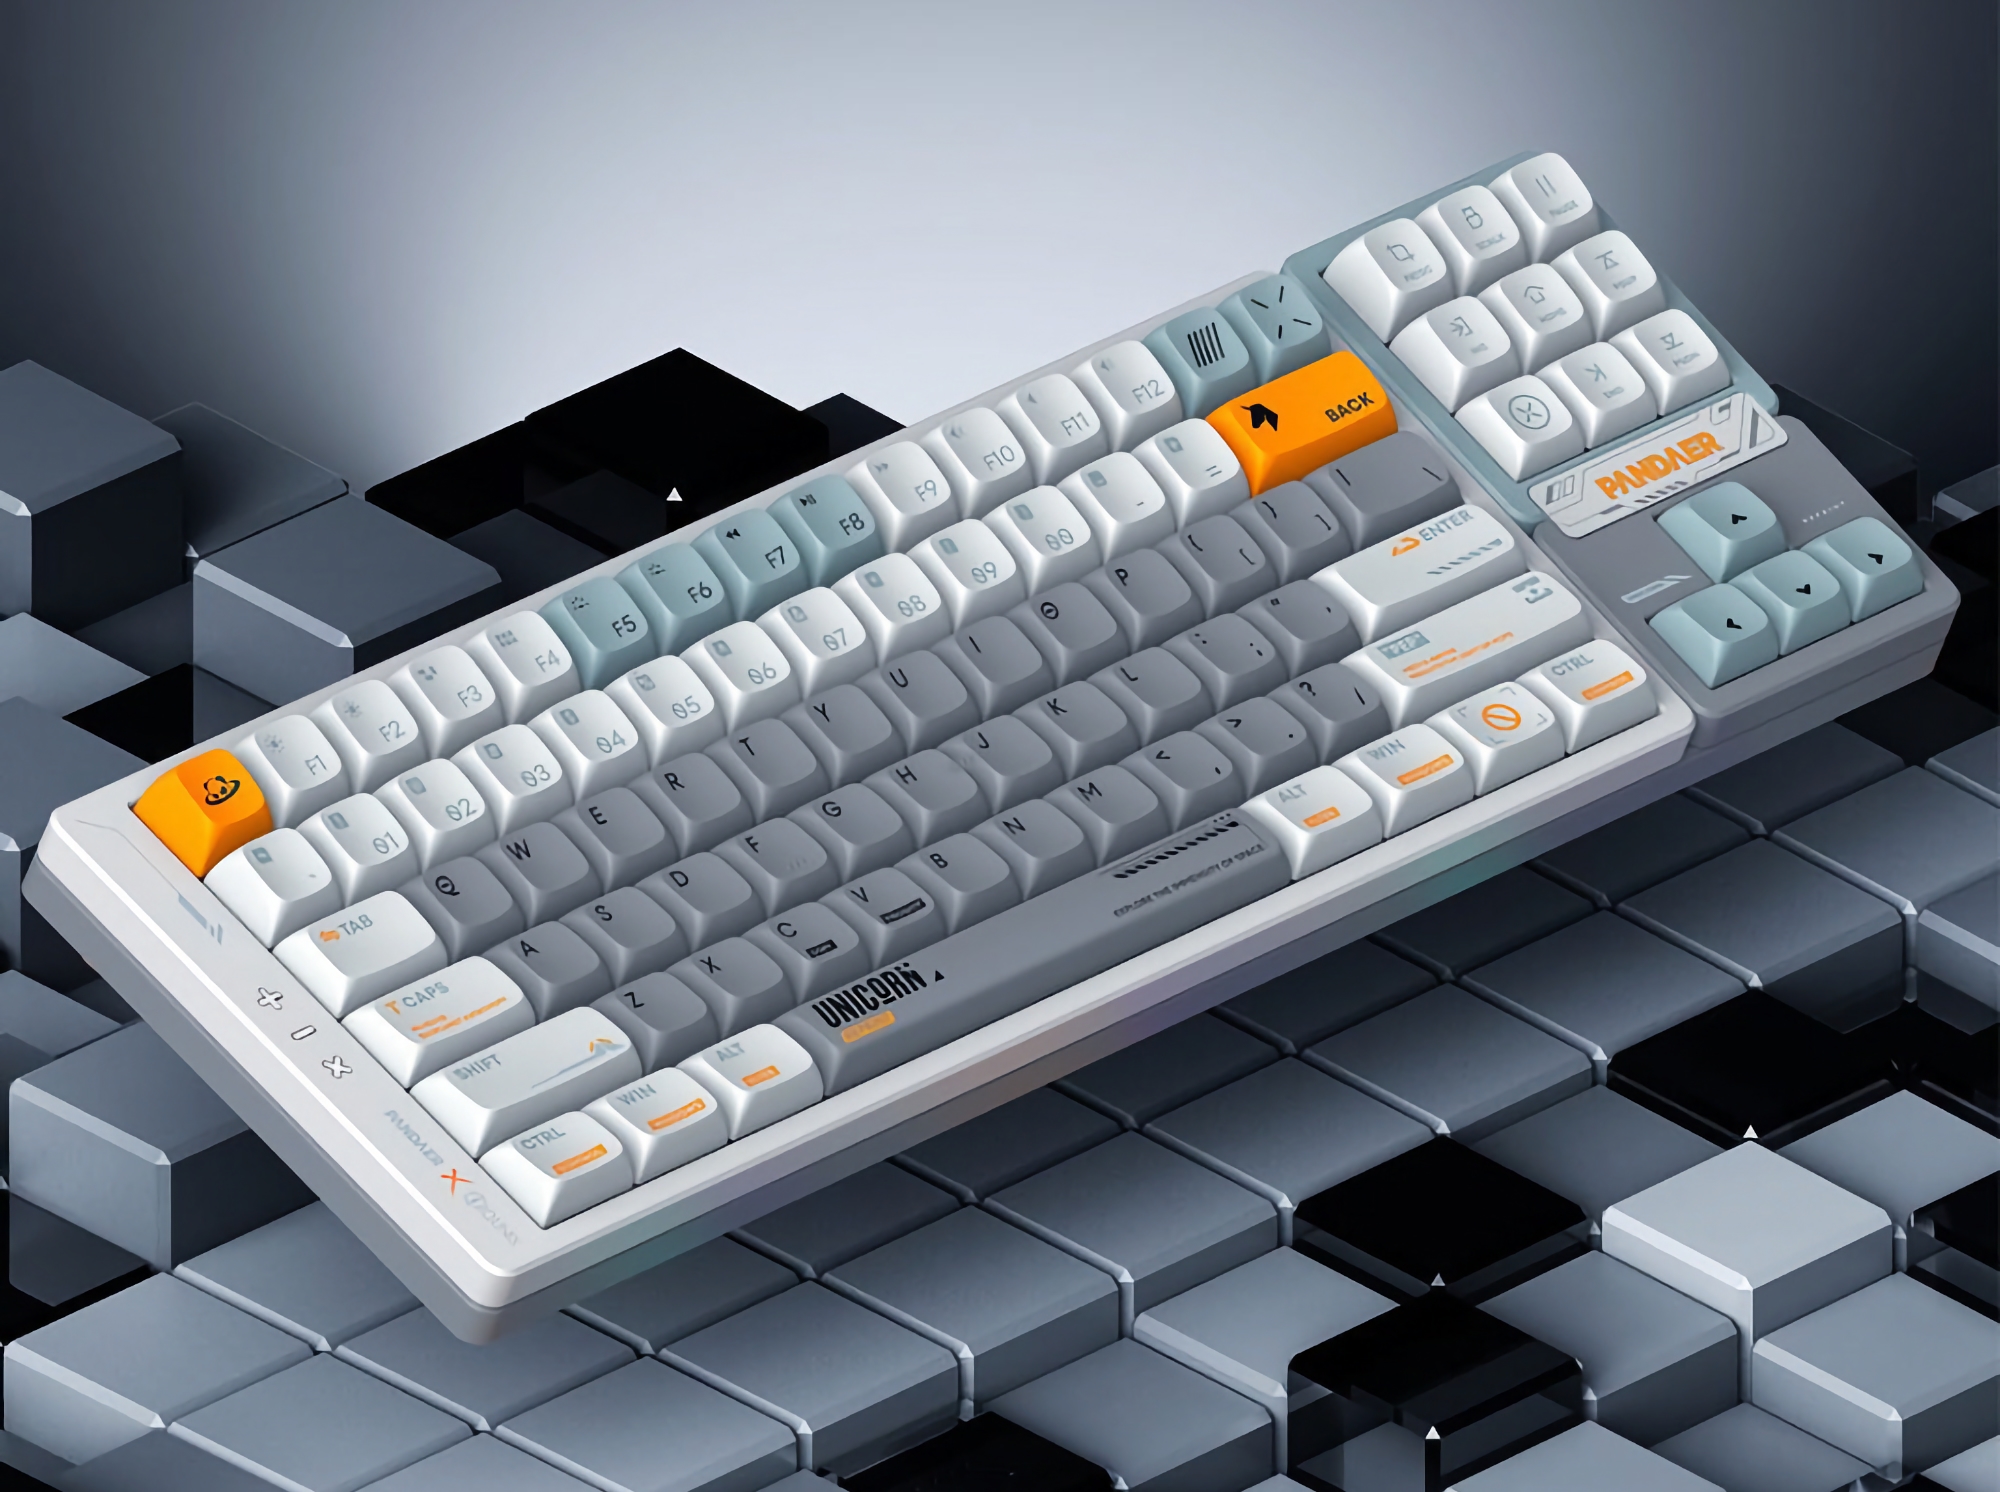 Meizu a dévoilé un nouveau clavier mécanique sous la marque PANDAER avec un rétroéclairage RGB, des touches amovibles et trois modes de connexion.